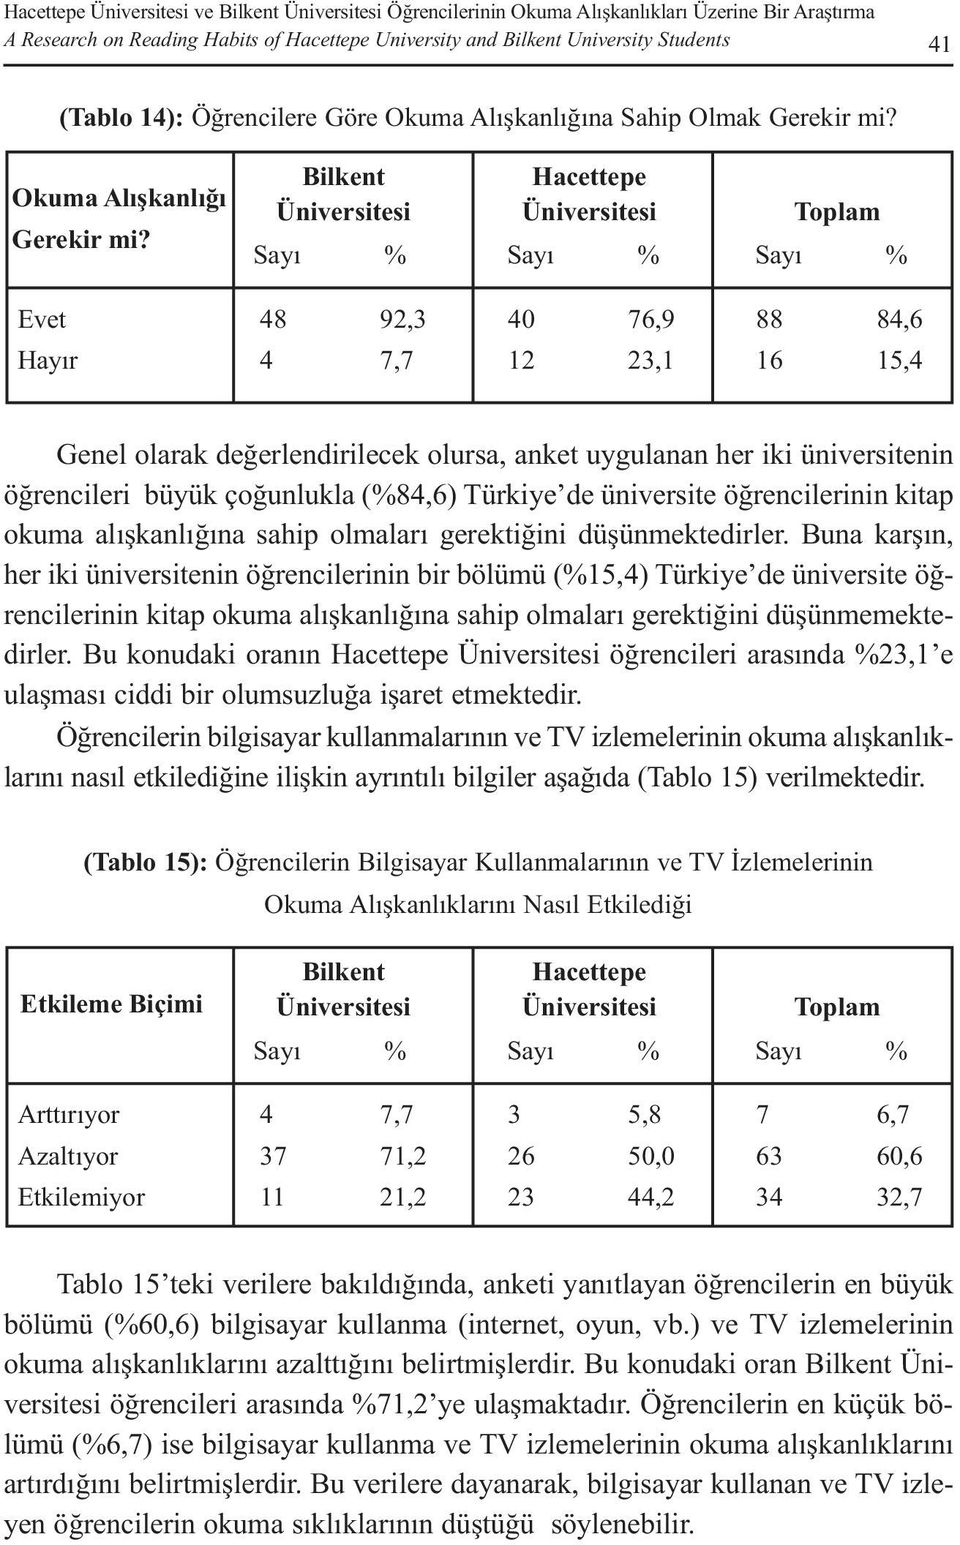 48 4 92,3 7,7 40 12 76,9 23,1 88 16 84,6 15,4 Genel olarak değerlendirilecek olursa, anket uygulanan her iki üniversitenin öğrencileri büyük çoğunlukla (84,6) Türkiye de üniversite öğrencilerinin